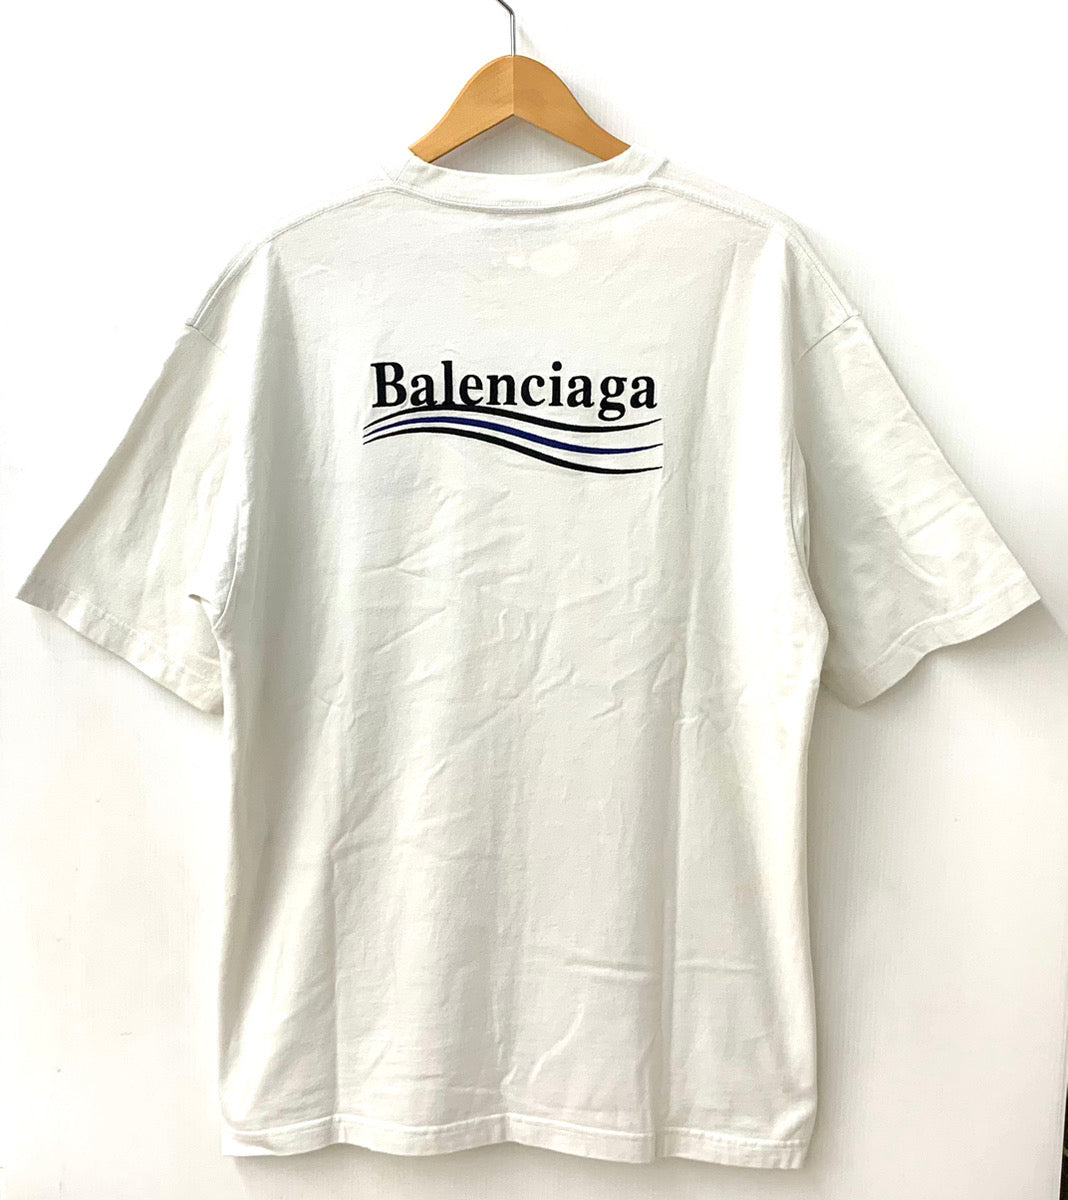 バレンシアガ BALENCIAGA キャンペーンロゴ Tシャツ 641675 TKVJ1 9084 ...